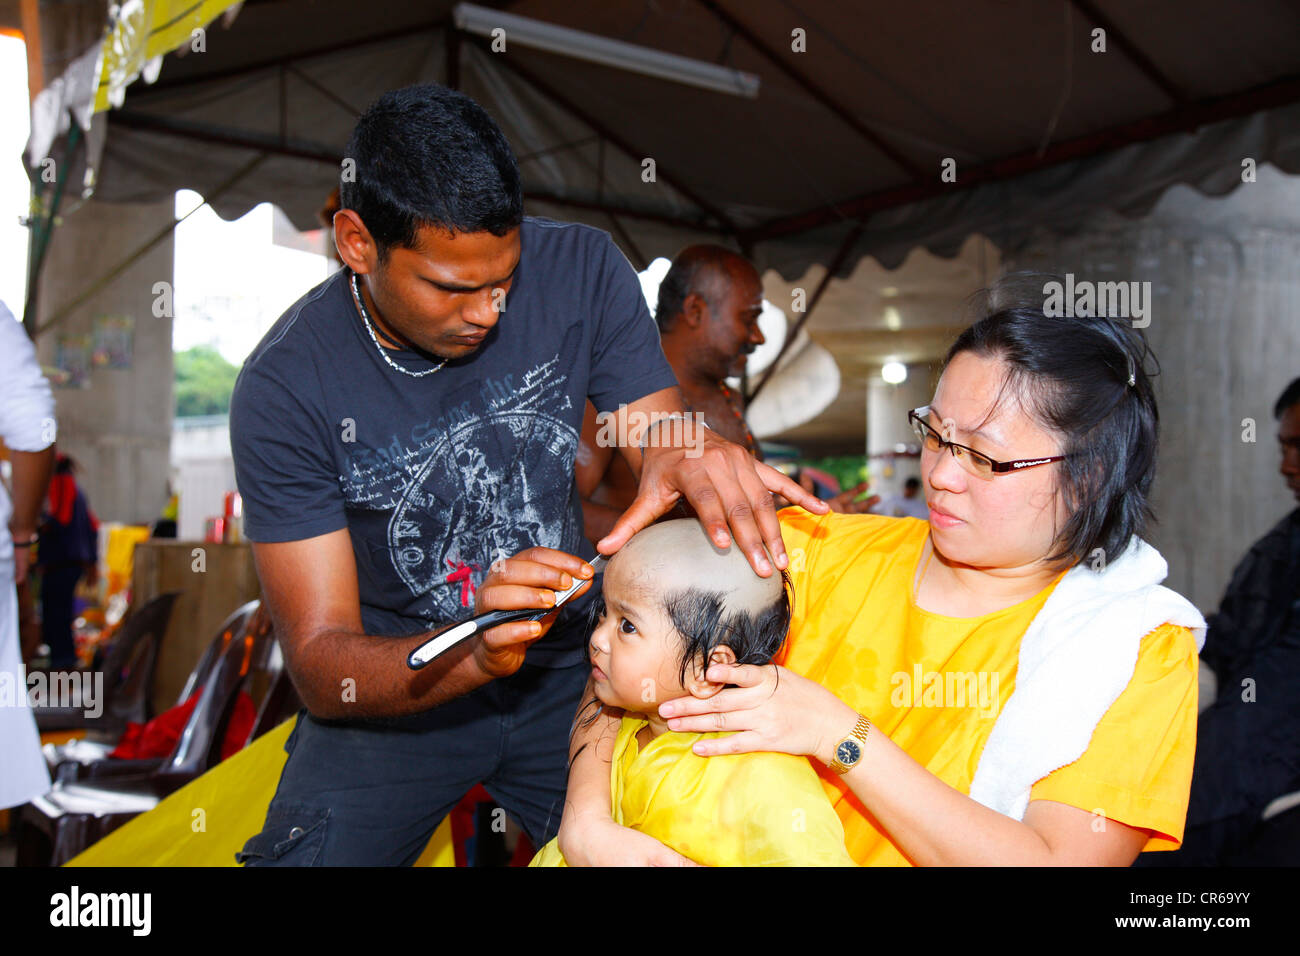 Kind die Haare rasiert werden mit einem Rasiermesser, hinduistische Festival Thaipusam, Batu Caves-Kalkstein-Höhlen und Tempel, Kuala Lumpur, Malaysia Stockfoto